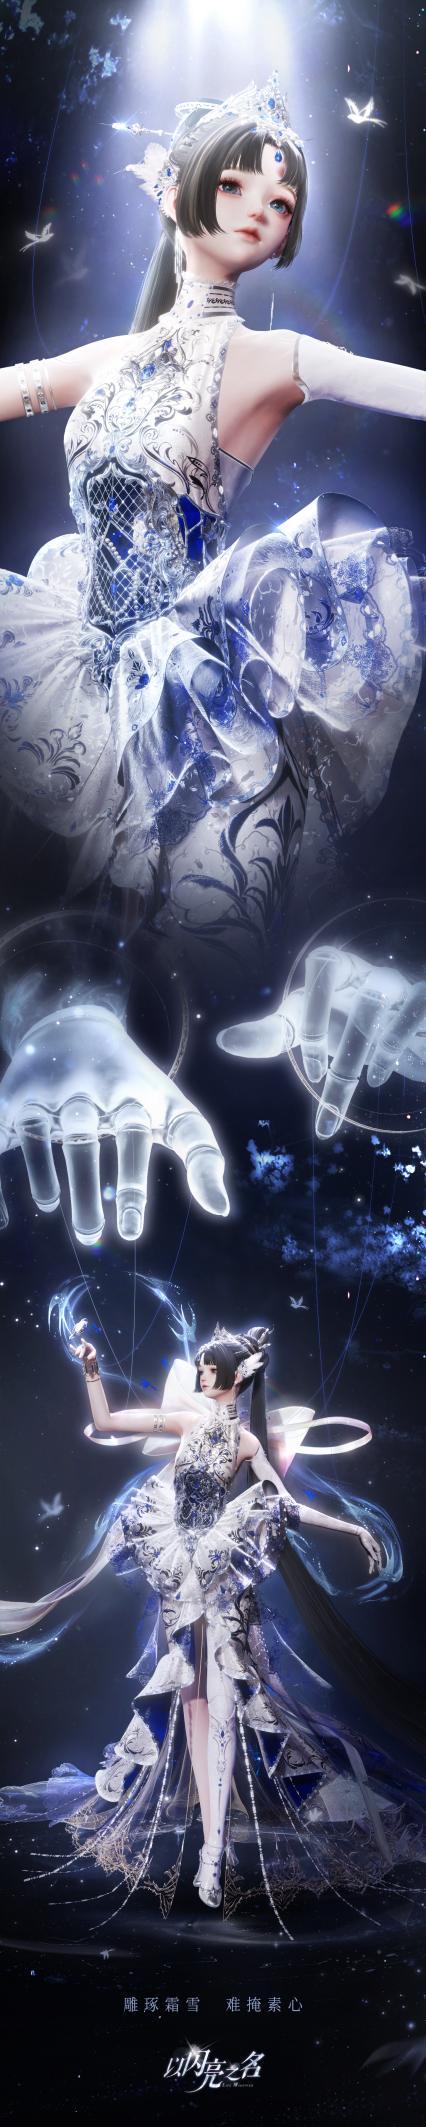 《以闪亮之名》傀儡之章全新版本发布，祖龙娱乐引领游戏圈时装技术升级 